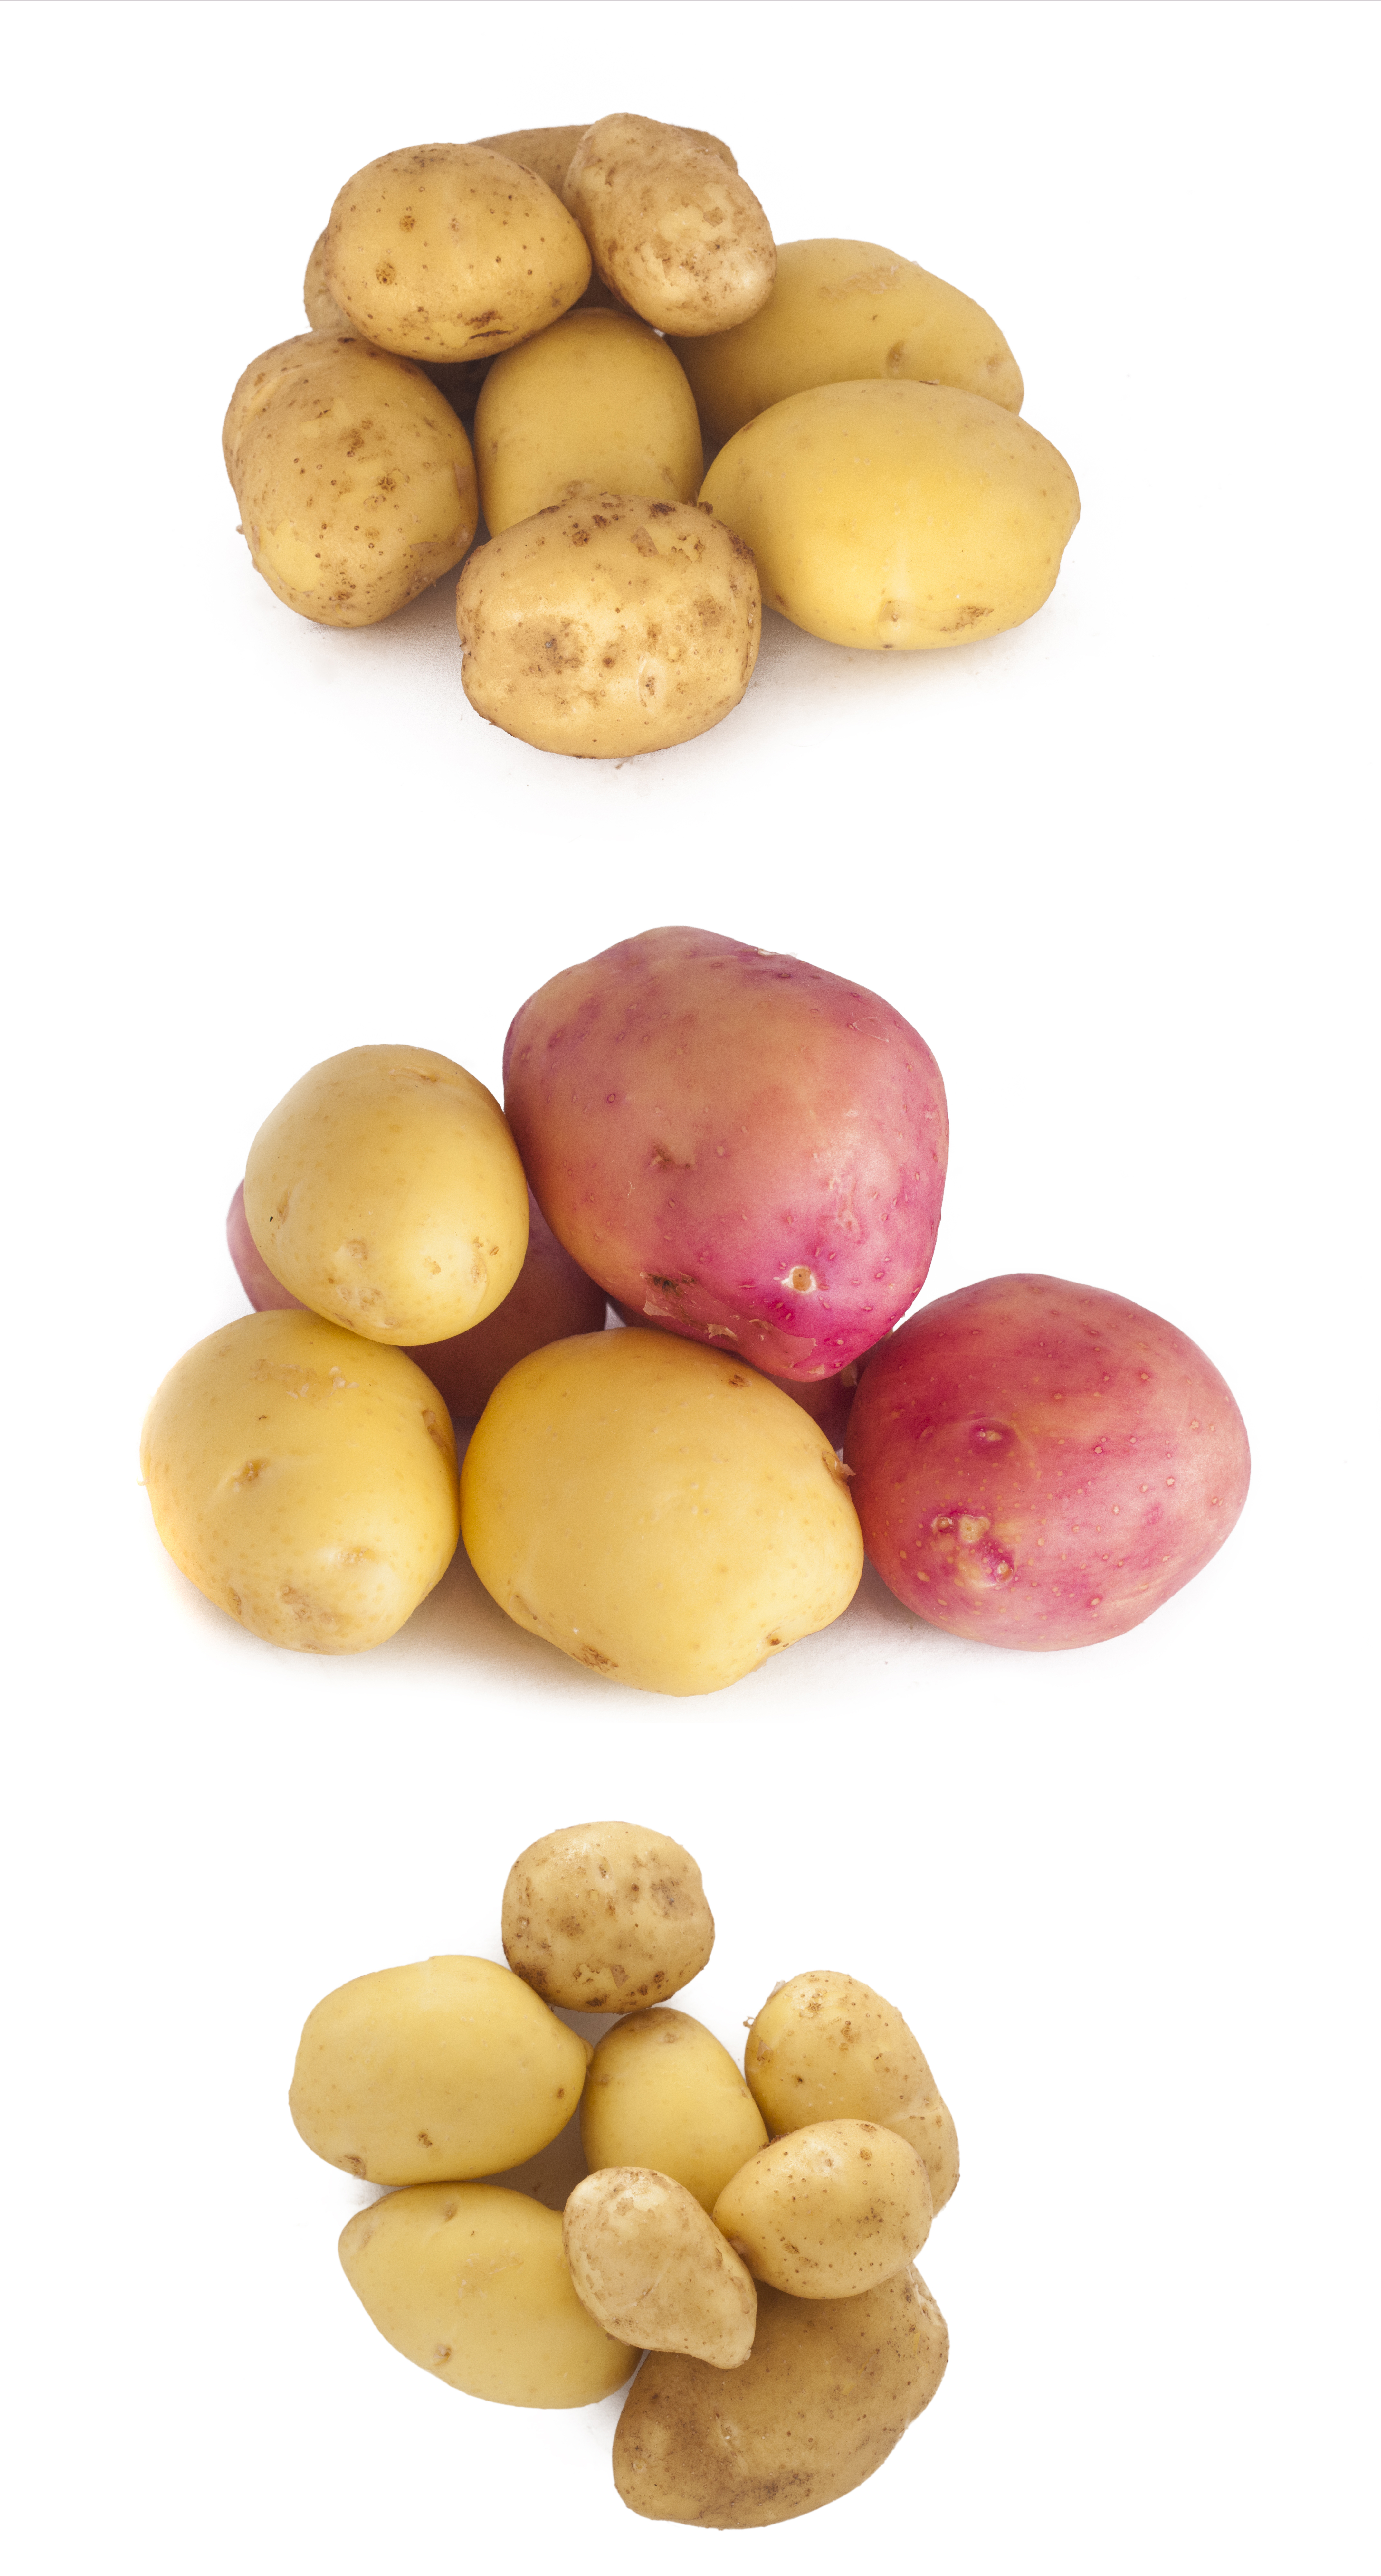 Potato grater - Free Stock Photo by Tomas Adomaitis on